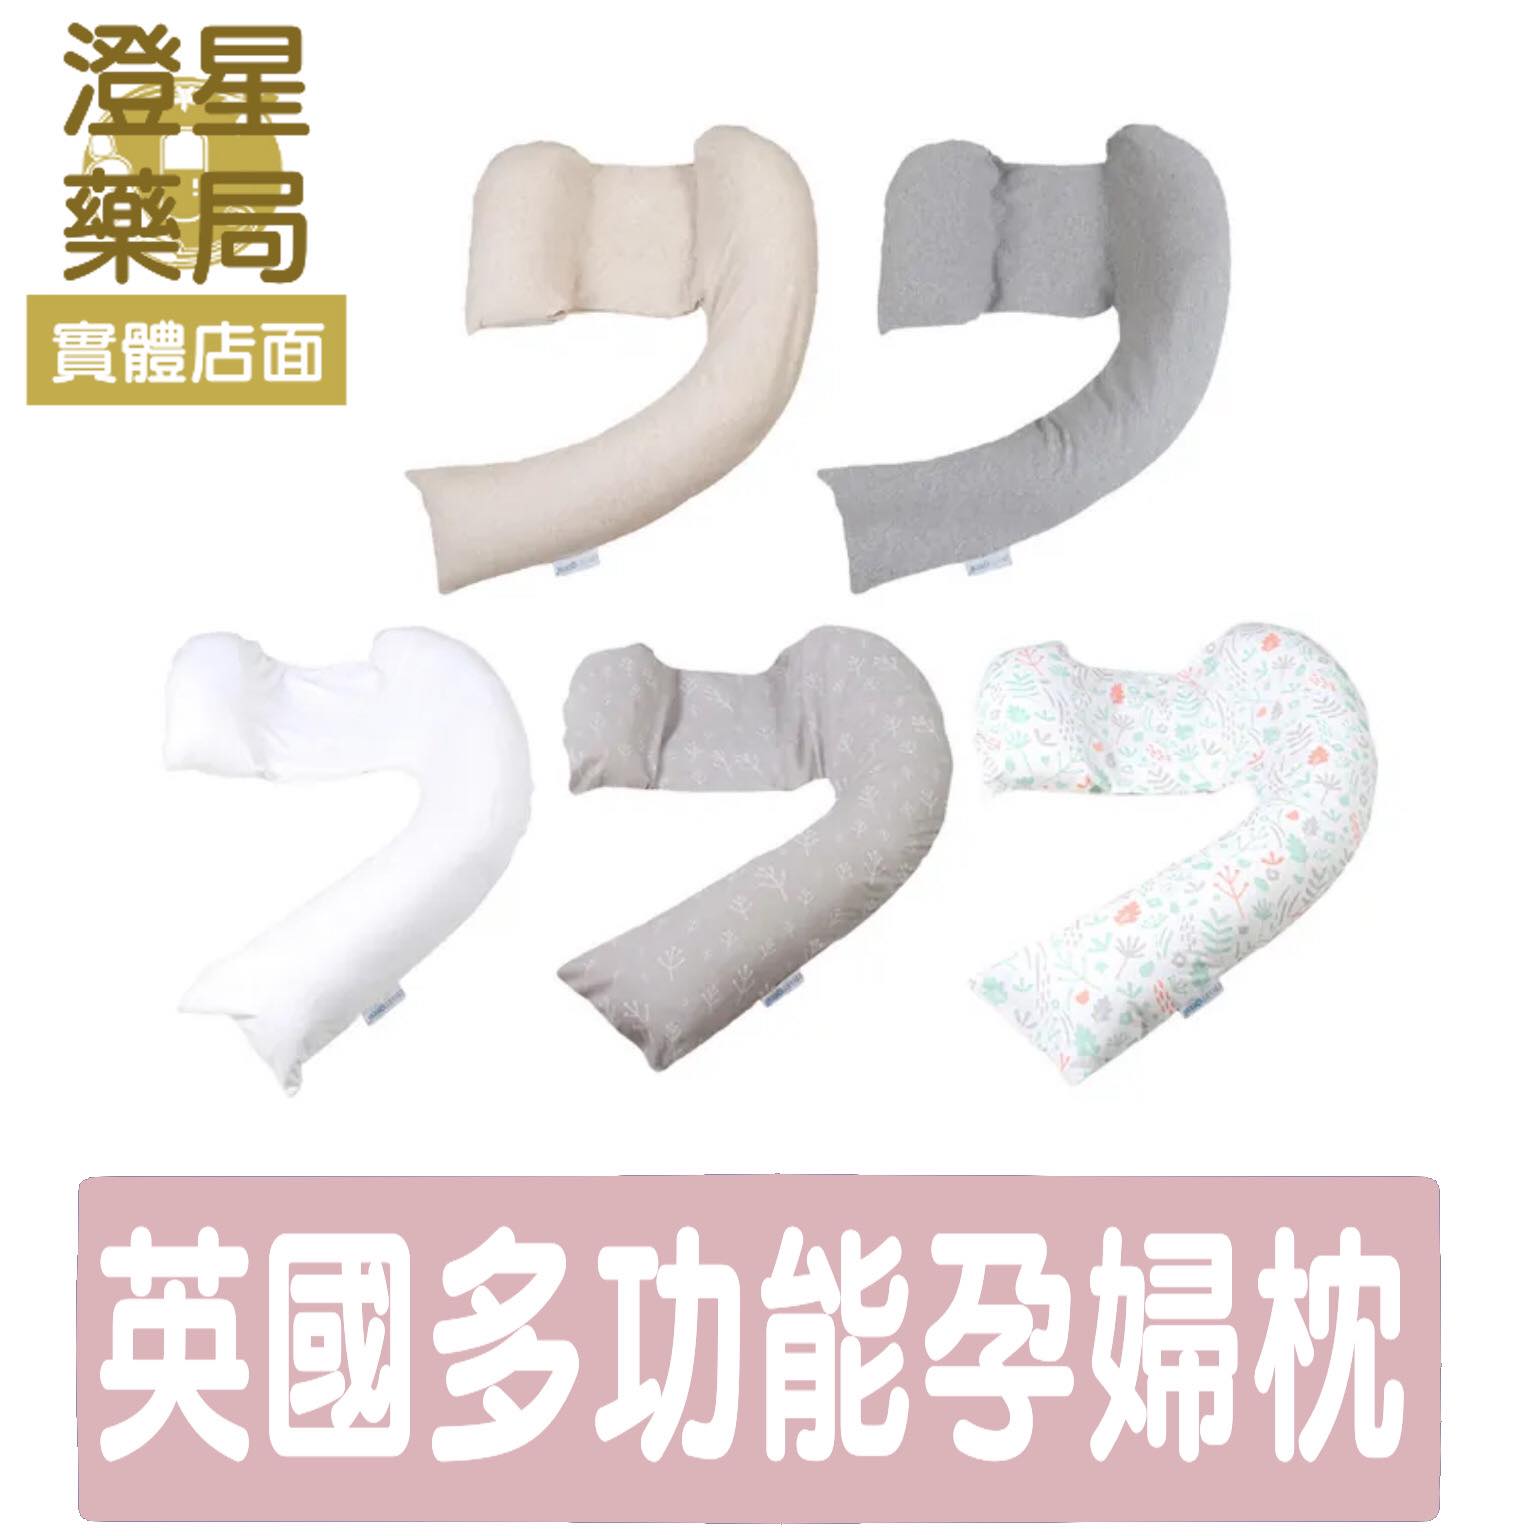 【免運】 Dreamgenii 英國多功能孕婦枕多款可選 孕婦枕